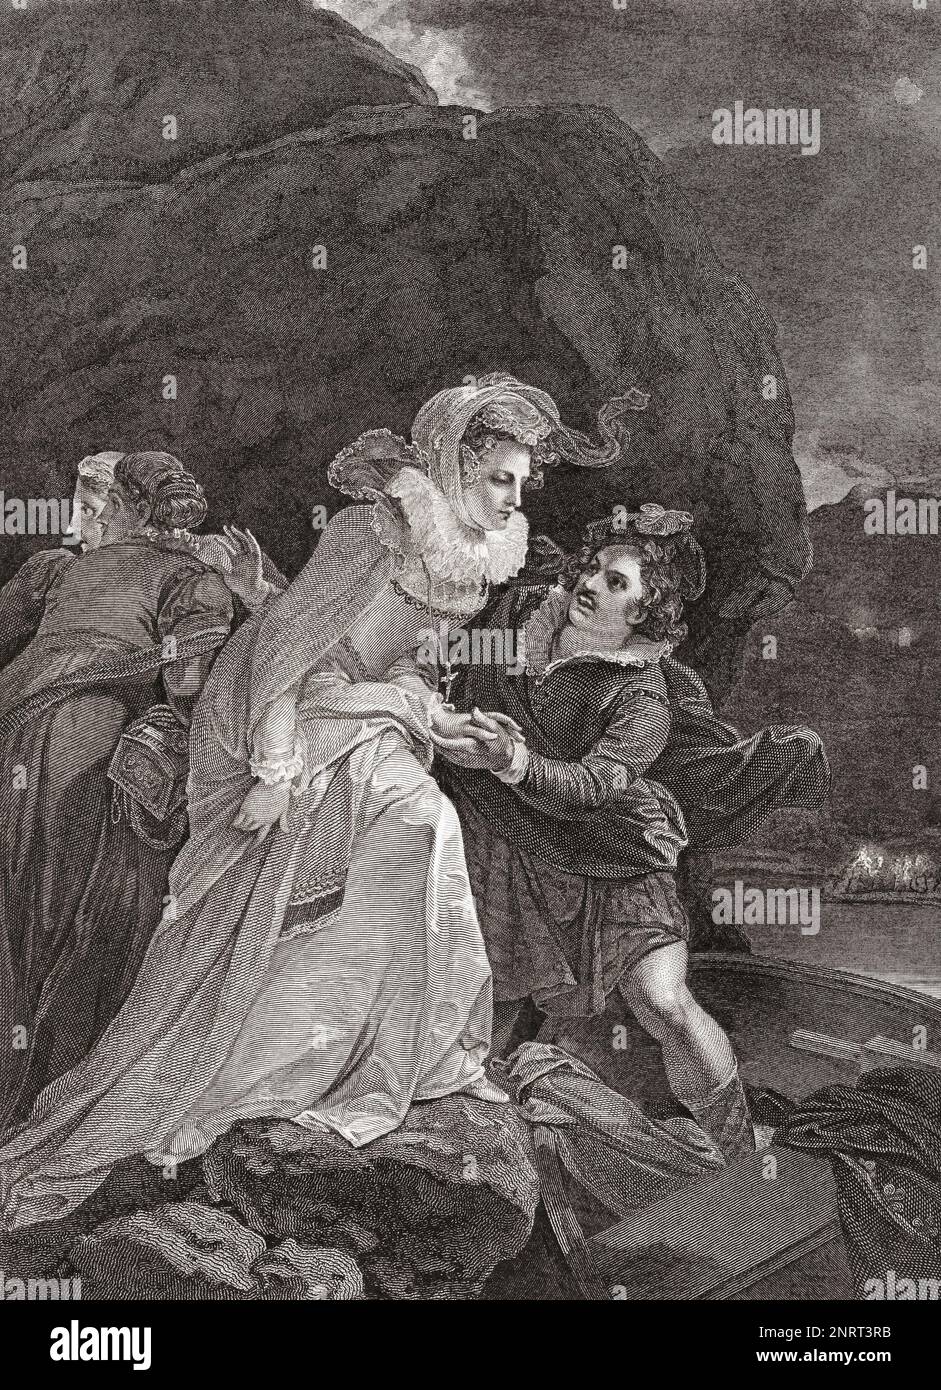 Maria Regina degli scozzesi fuga dal castello di Loch Leven, 2 maggio 1568. Dopo una stampa di William Sharp da un'opera di Robert Smirke originariamente apparsa nella Robert Bowyer's Historic Gallery, pubblicata tra il 1793 e il 1806. Foto Stock